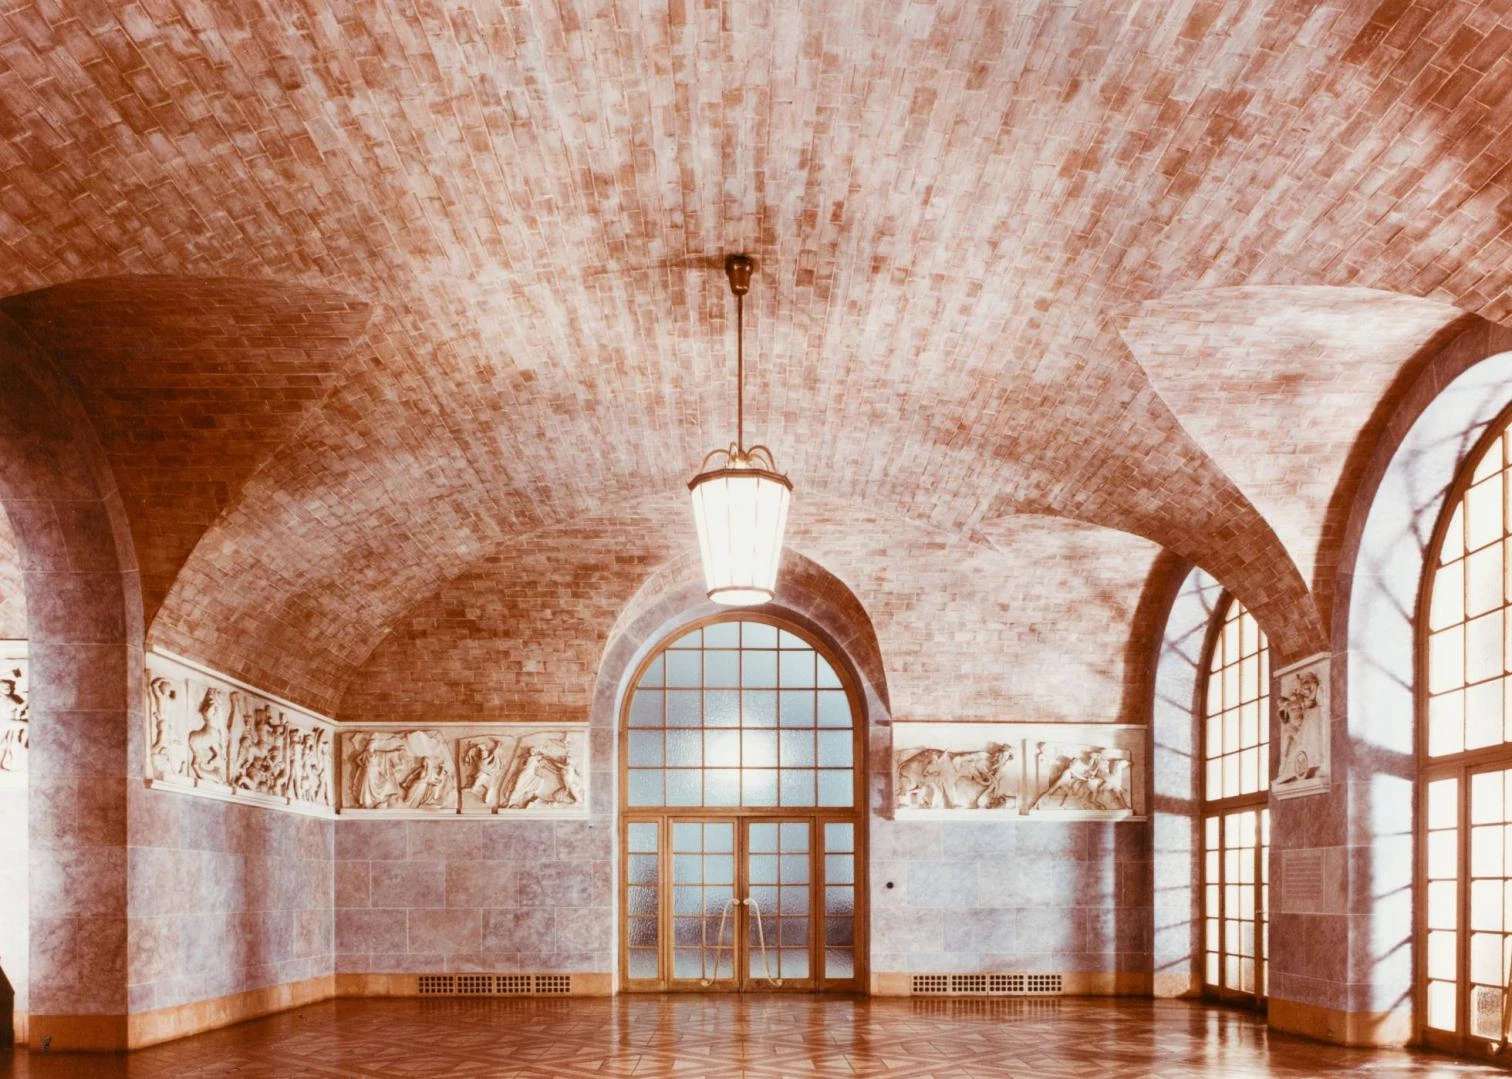 Bóvedas tabicadas en el interior del Banco Central de Baviera. Archivo Paul Y Katrin Basiner, Baufirma Rank